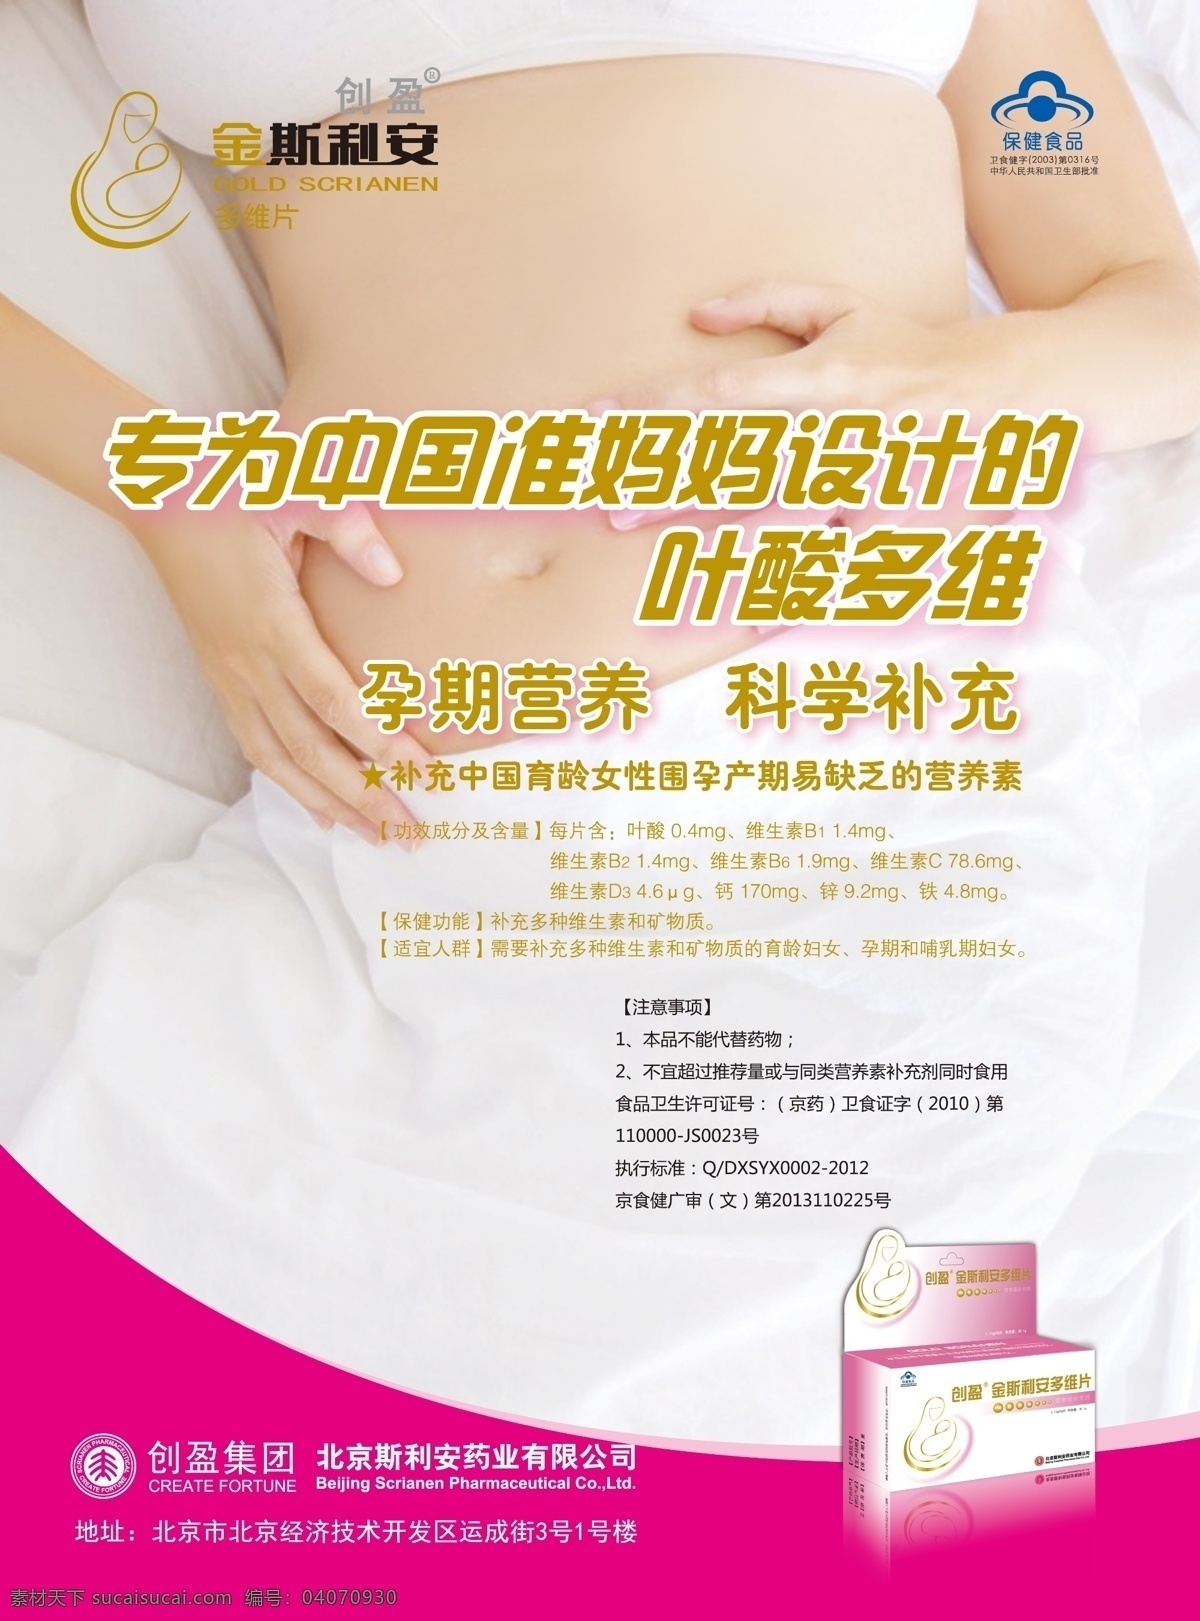 宣传 画册 小孩 母子 第一 国家 药业 叶酸片 金斯利安 药品 海报 广告 设计模板 白色 粉色 源文件 分层